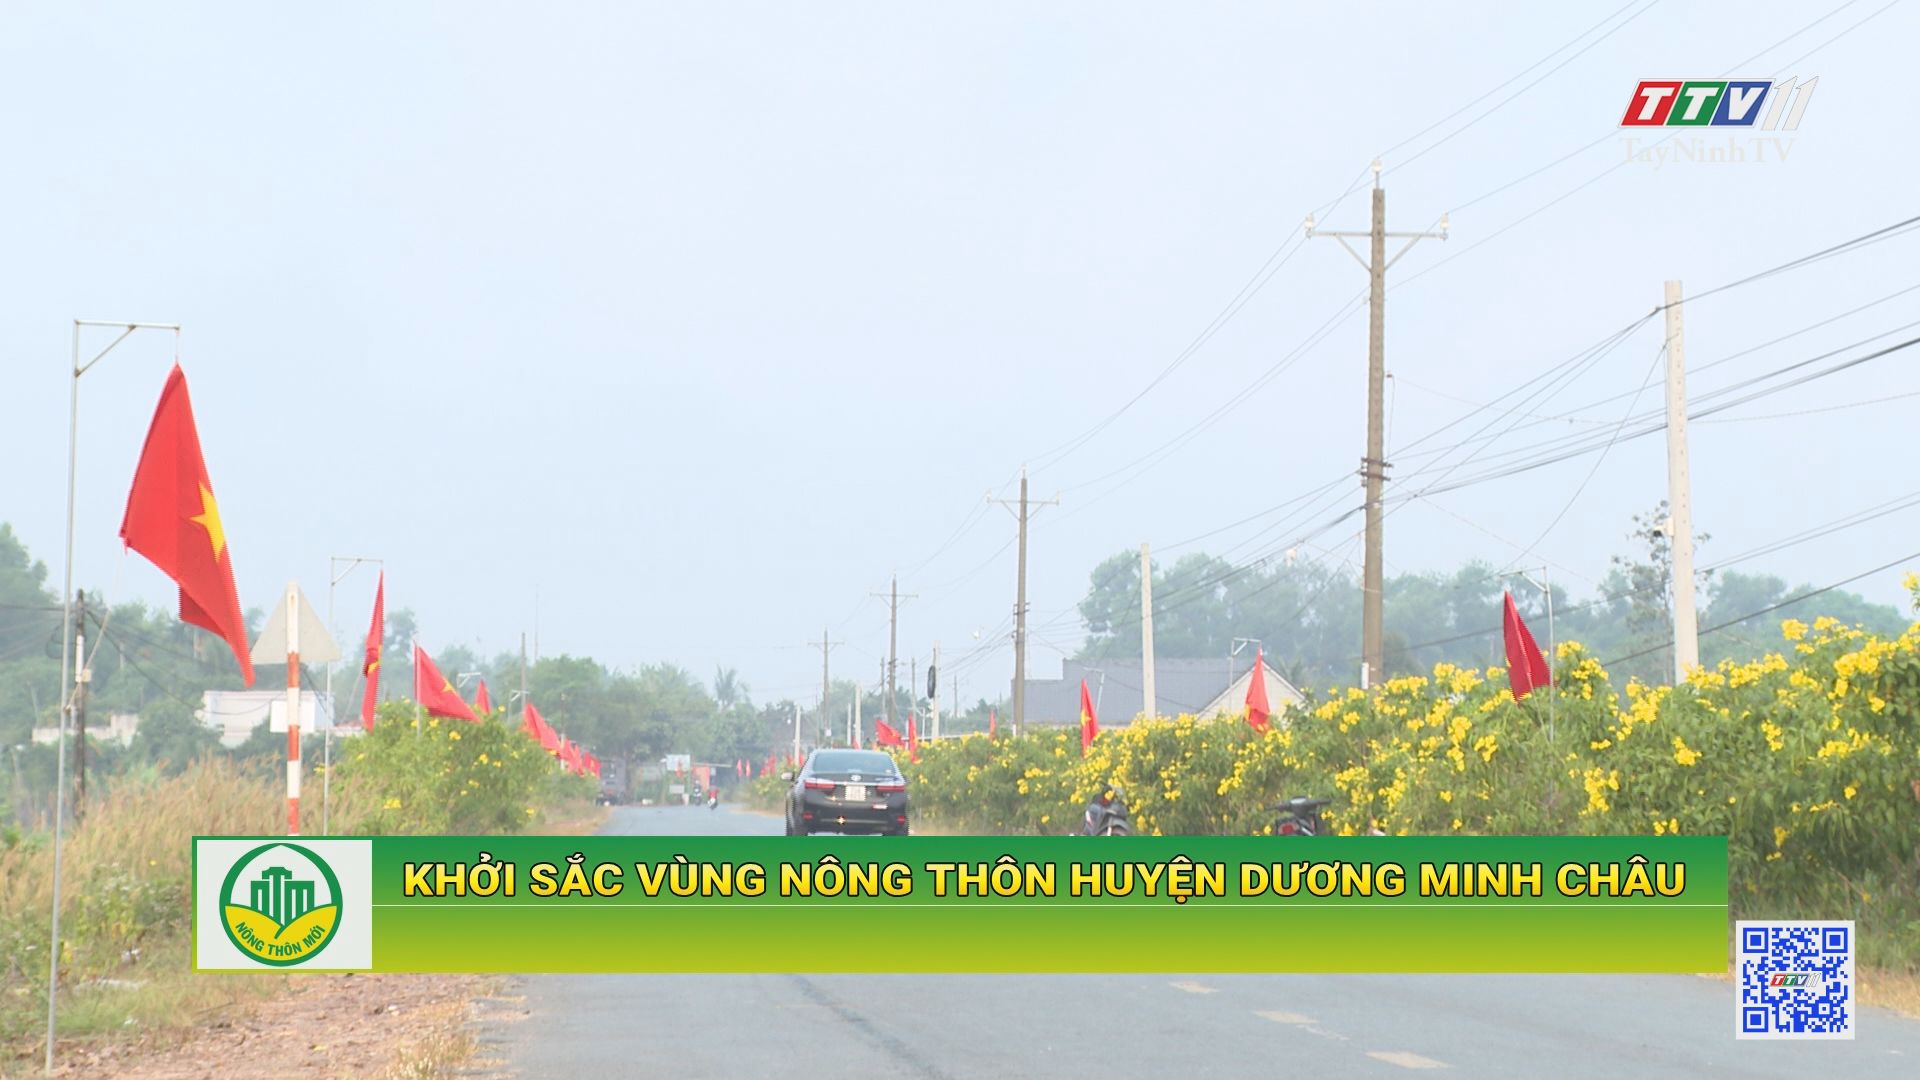 Khởi sắc vùng nông thôn huyện Dương Minh Châu | Tây Ninh xây dựng nông thôn mới | TayNinhTV